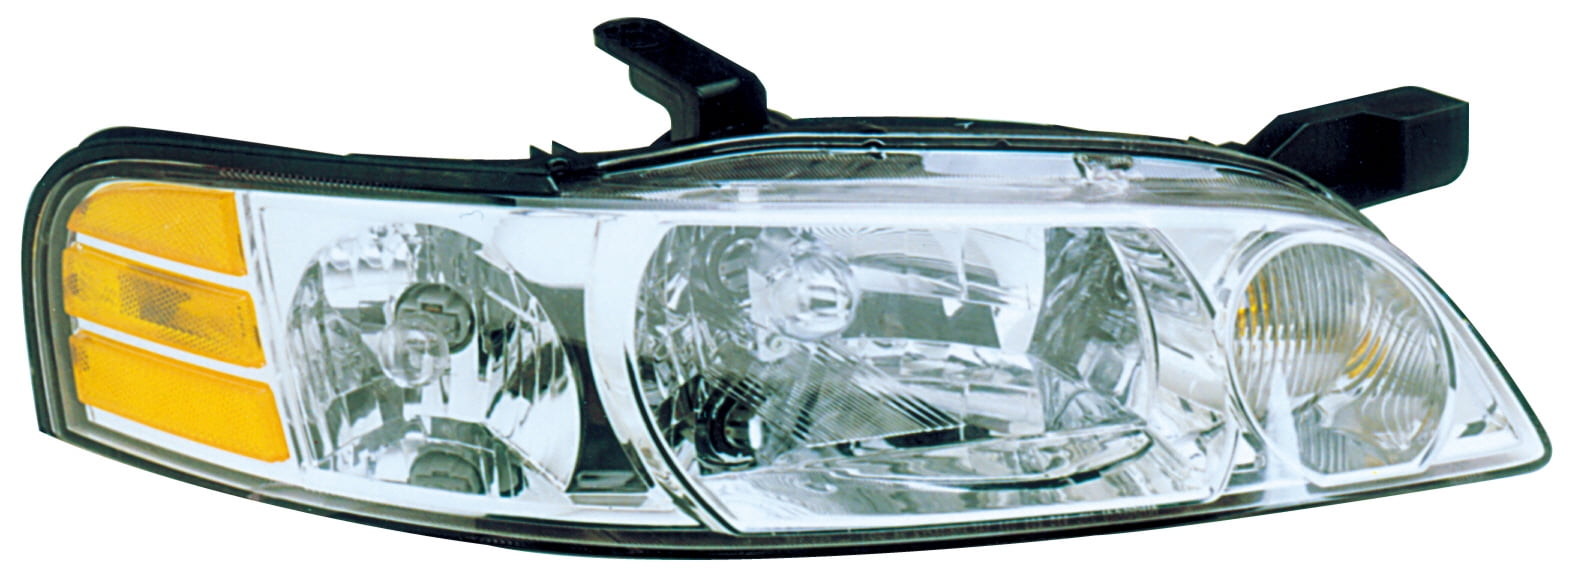 Passenger Right Chrome Headlight Front Lamp for 00-01 Nissan Sentra